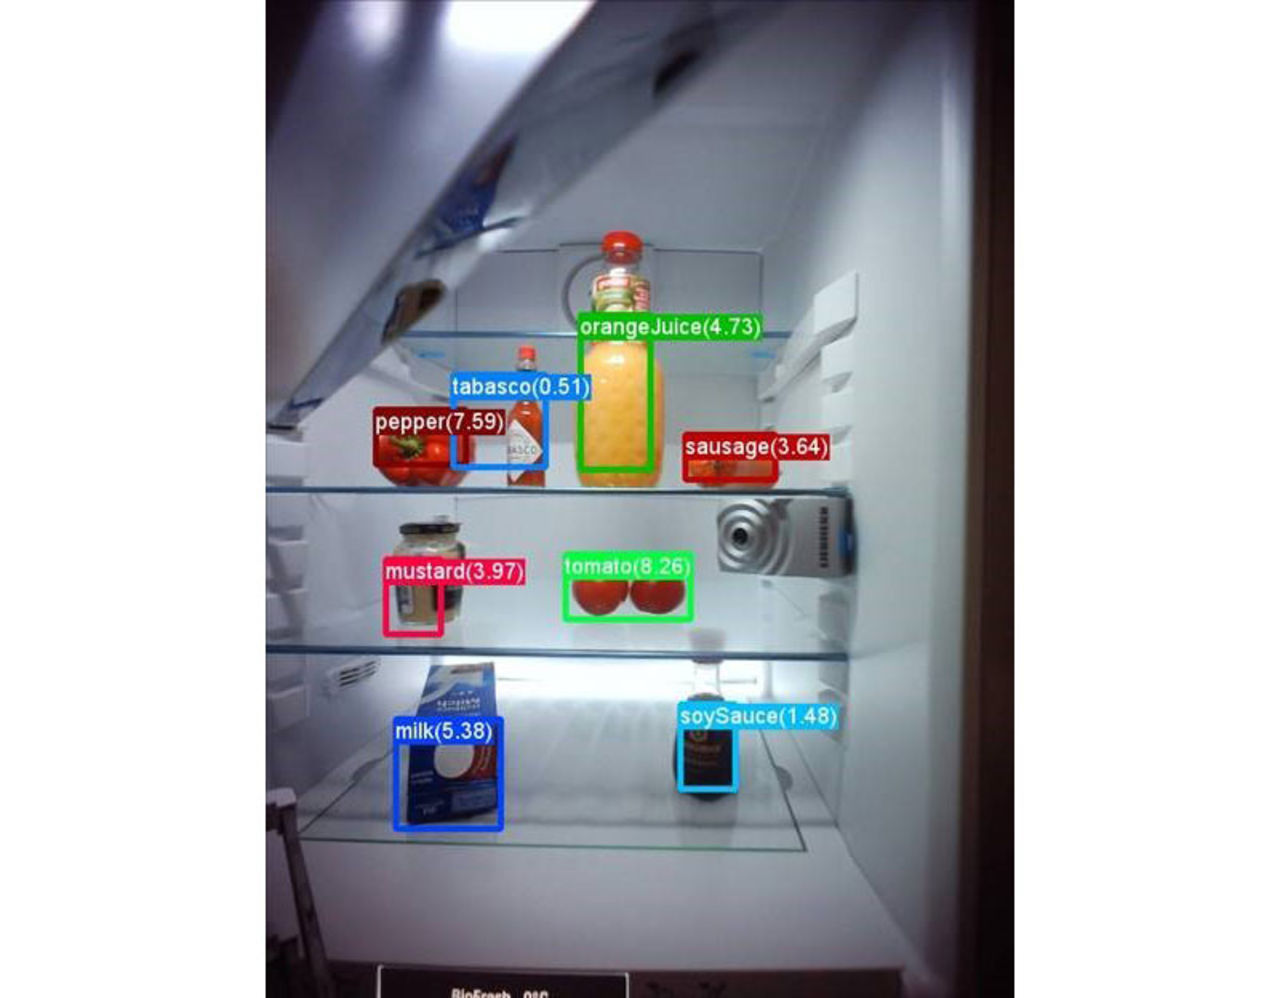 Microsoft installerar artificiell intelligens i kylskåp